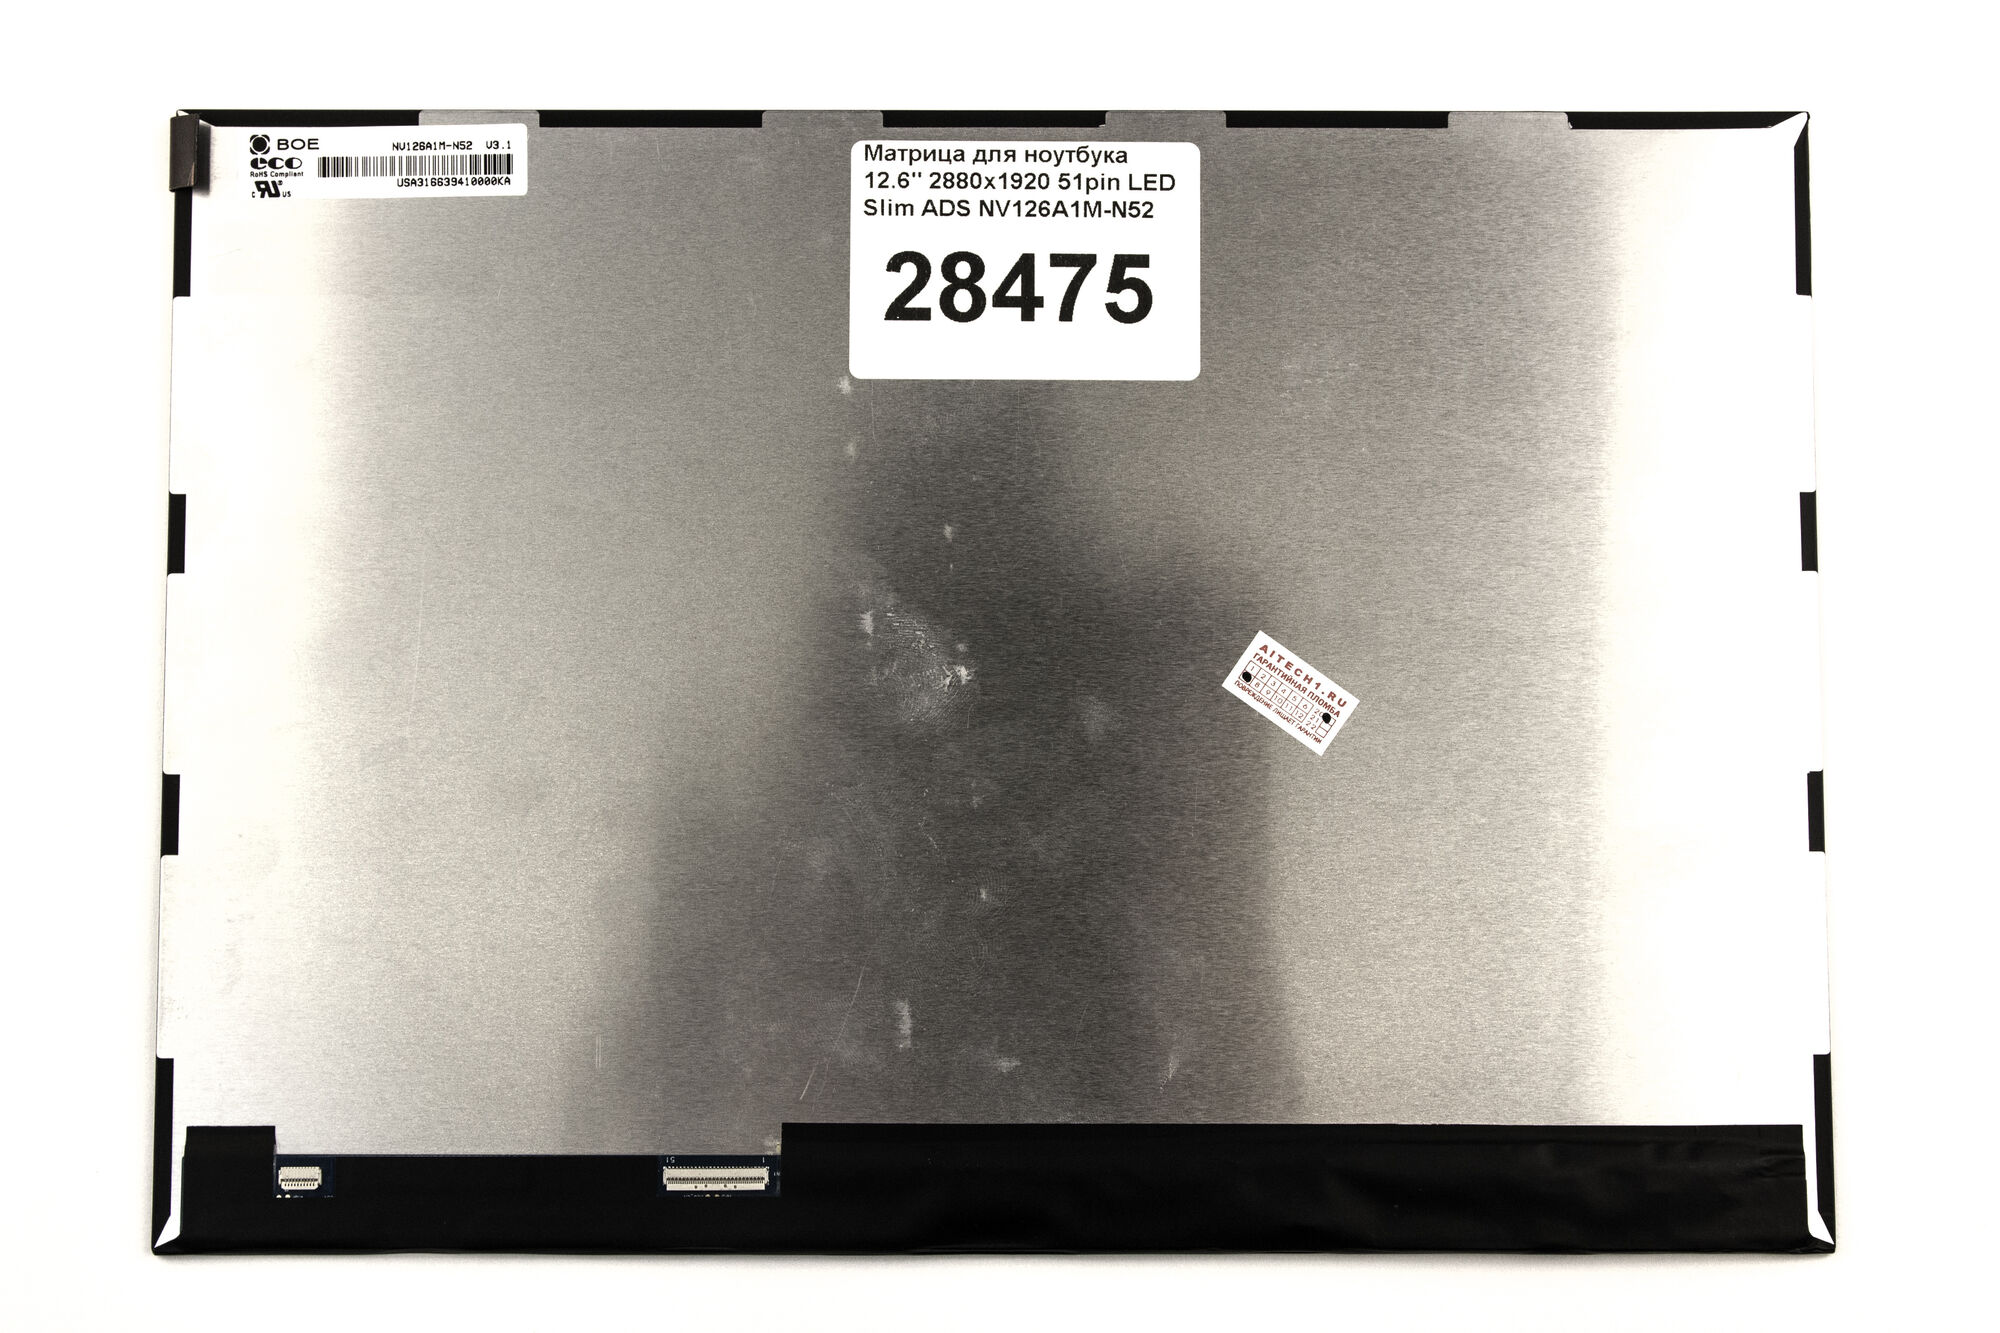 Матрица для ноутбука 12.6 2880x1920 51pin eDp Slim HADS NV126A1M-N52 Asus T305CA 12.5